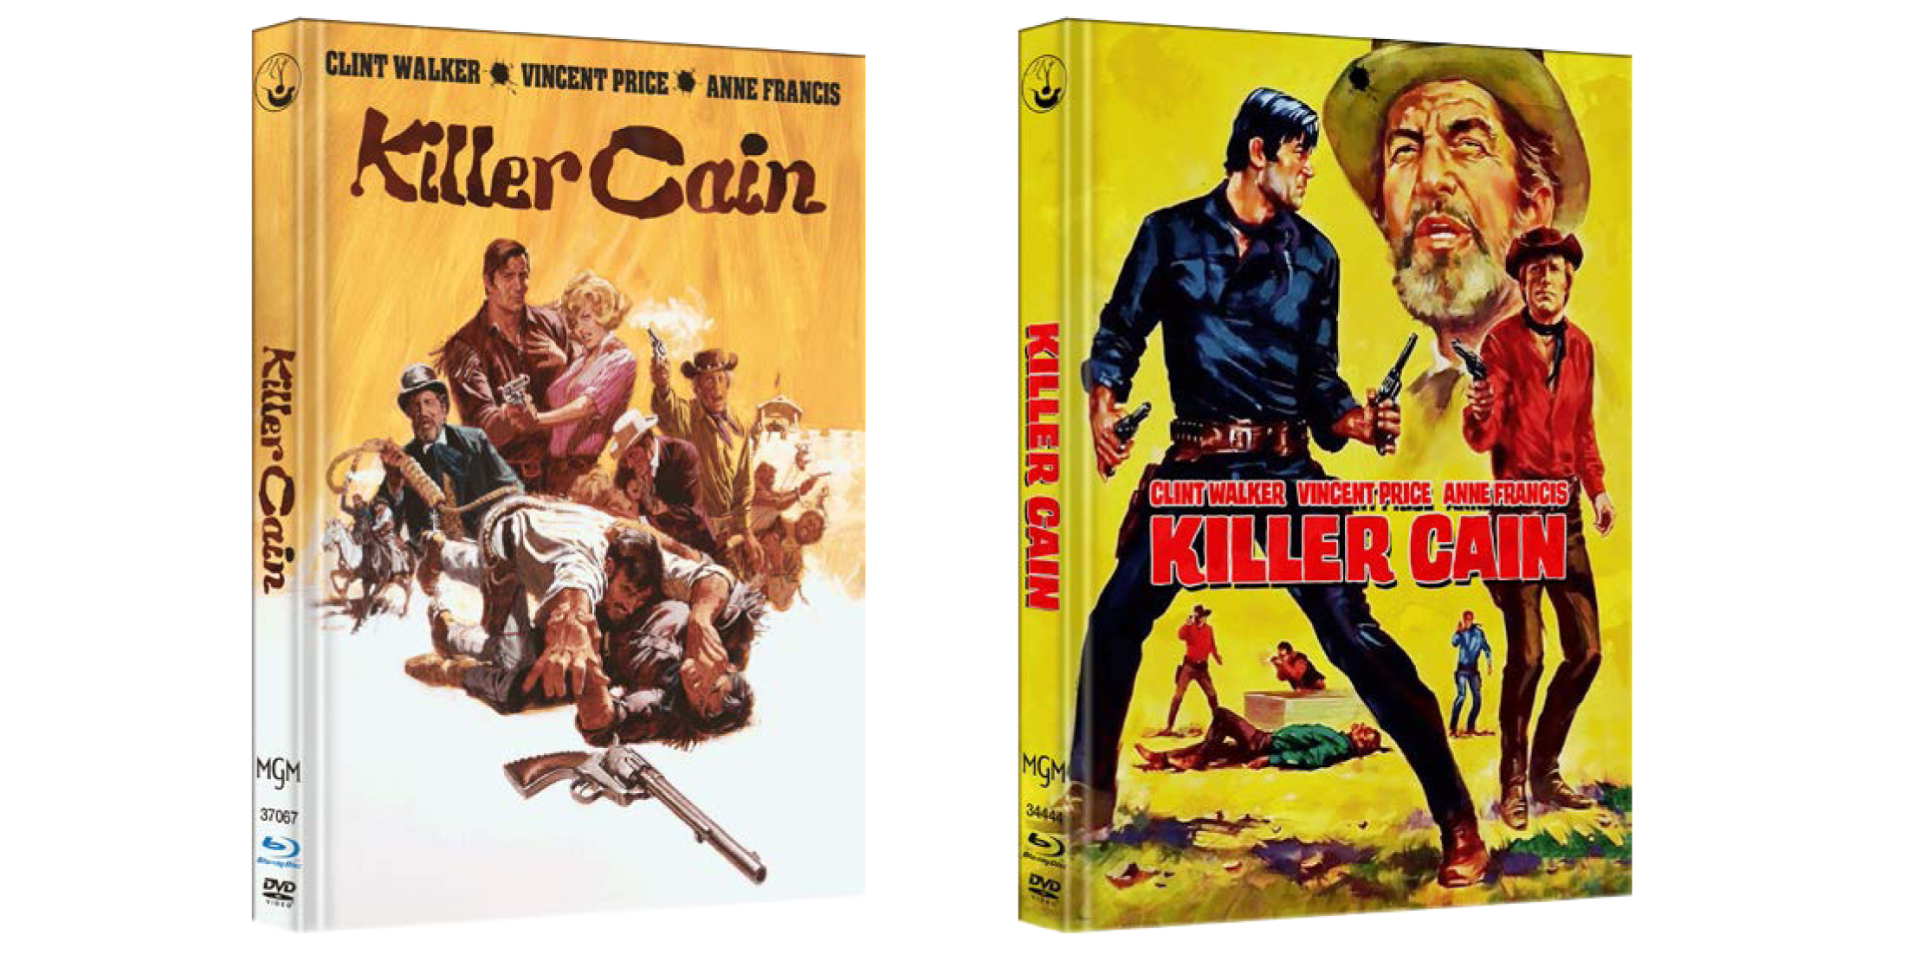 MediaBook Killer Cain